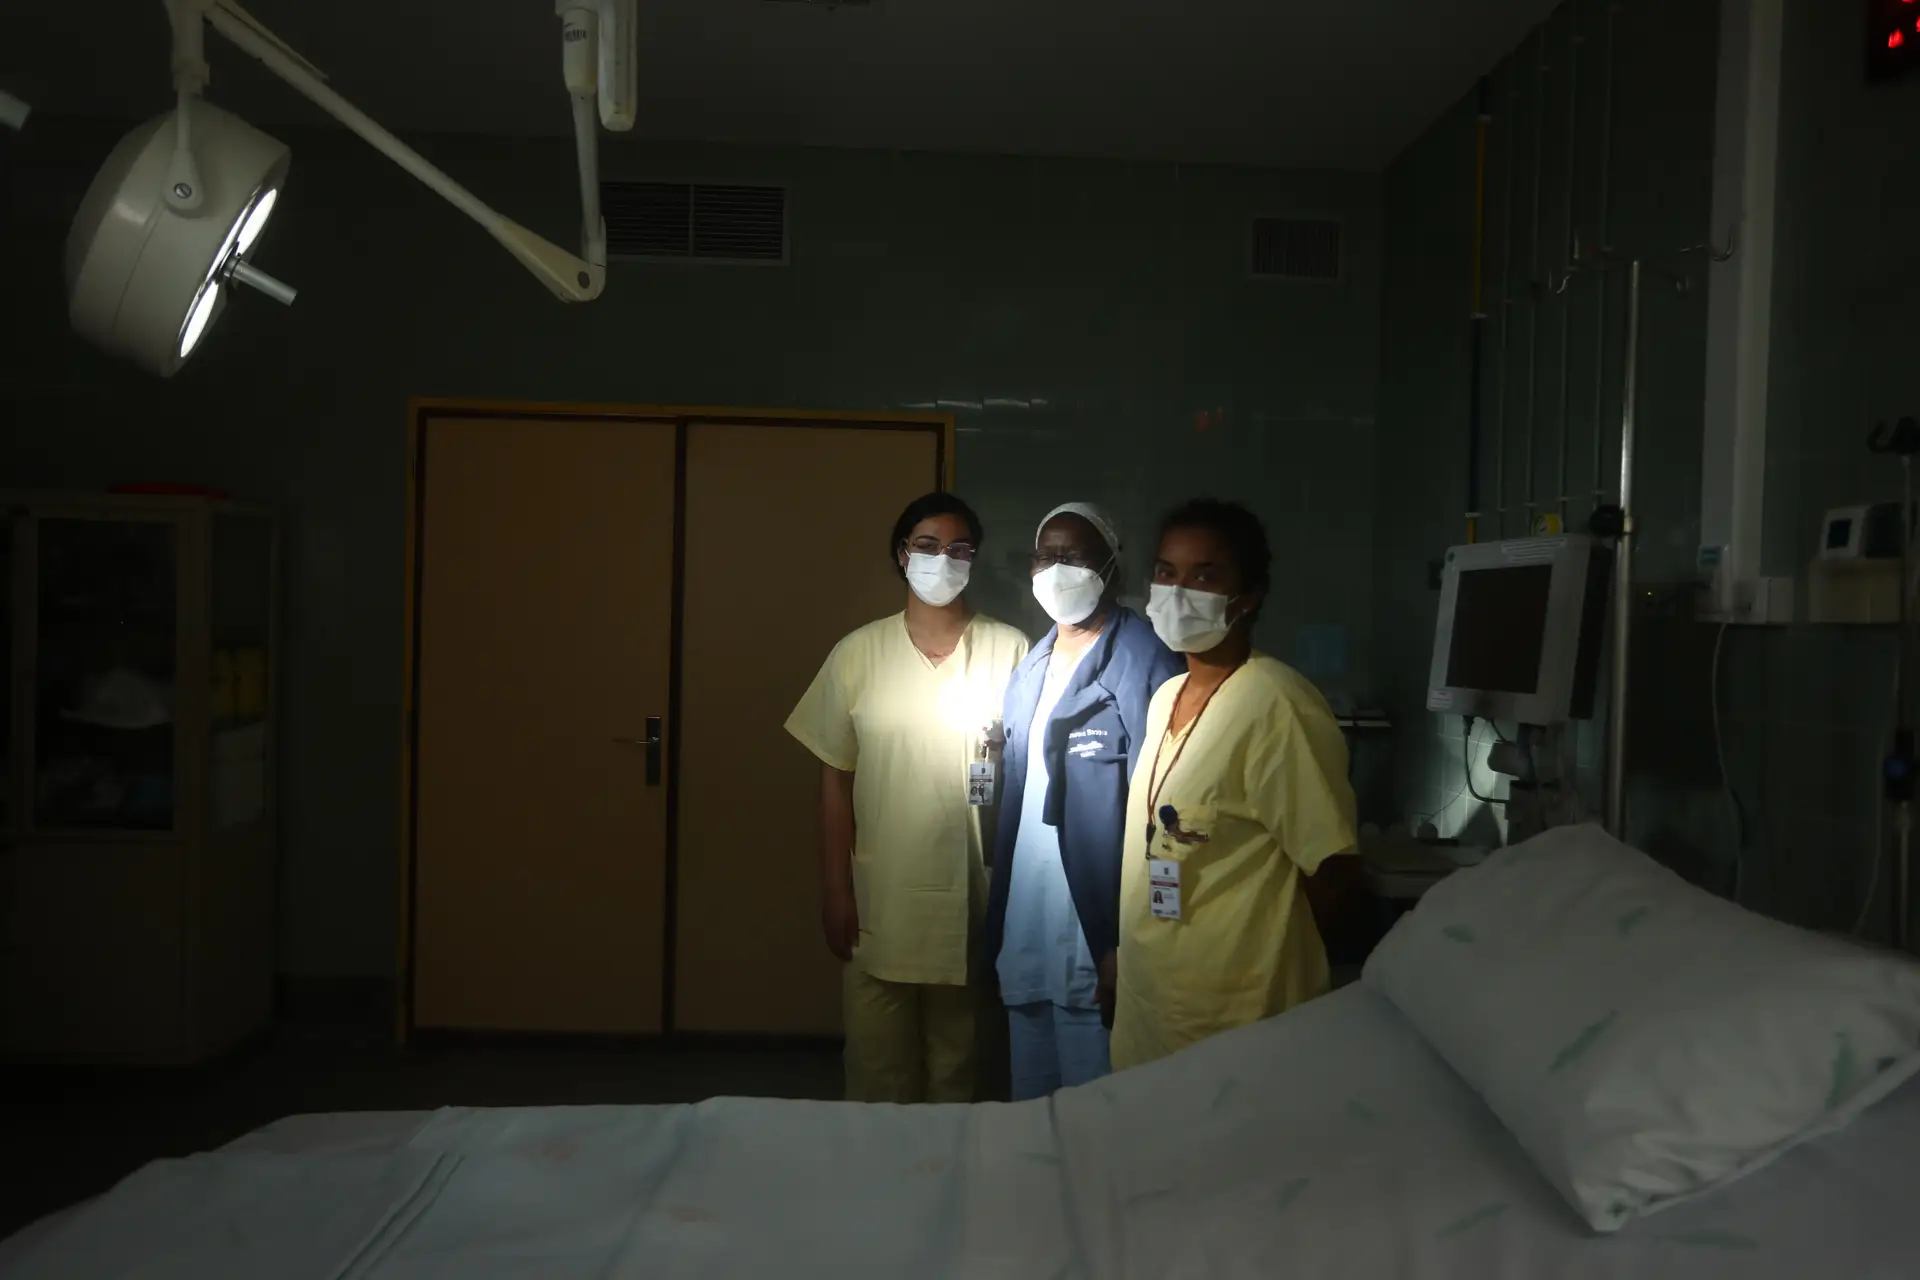 Esmeralda Barbosa, médica ginecologista, e as enfermeiras Débora Almeida (à direita) e Khatidja Amirali (à esquerda) fazem parte da equipa do hospital Amadora Sintra que tem detetado cerca de metade dos casos de mutilação genital feminina em Portugal.